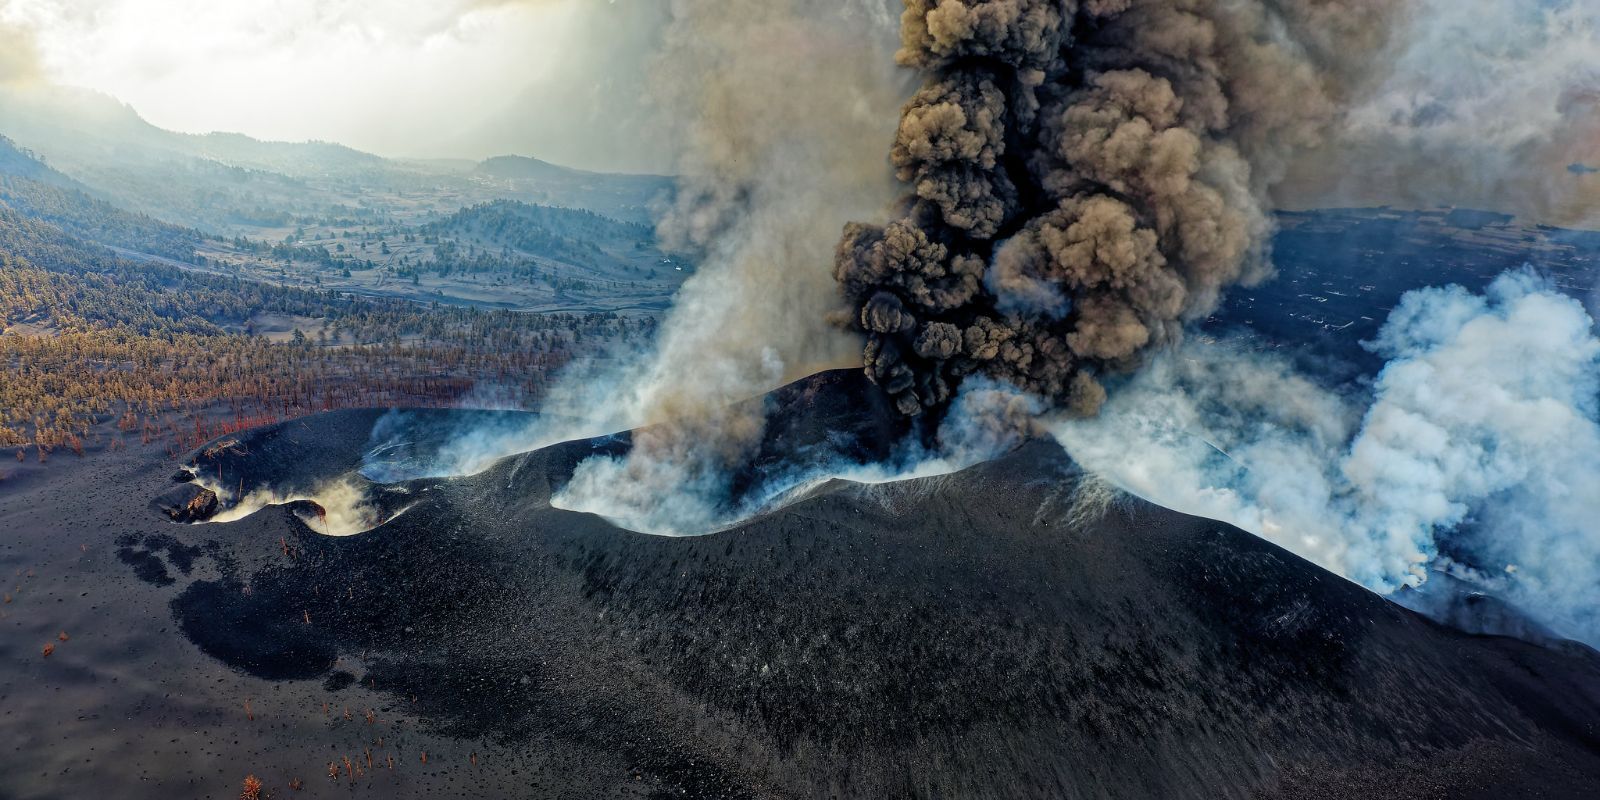 Volcan CC0 Jiherka Flickr